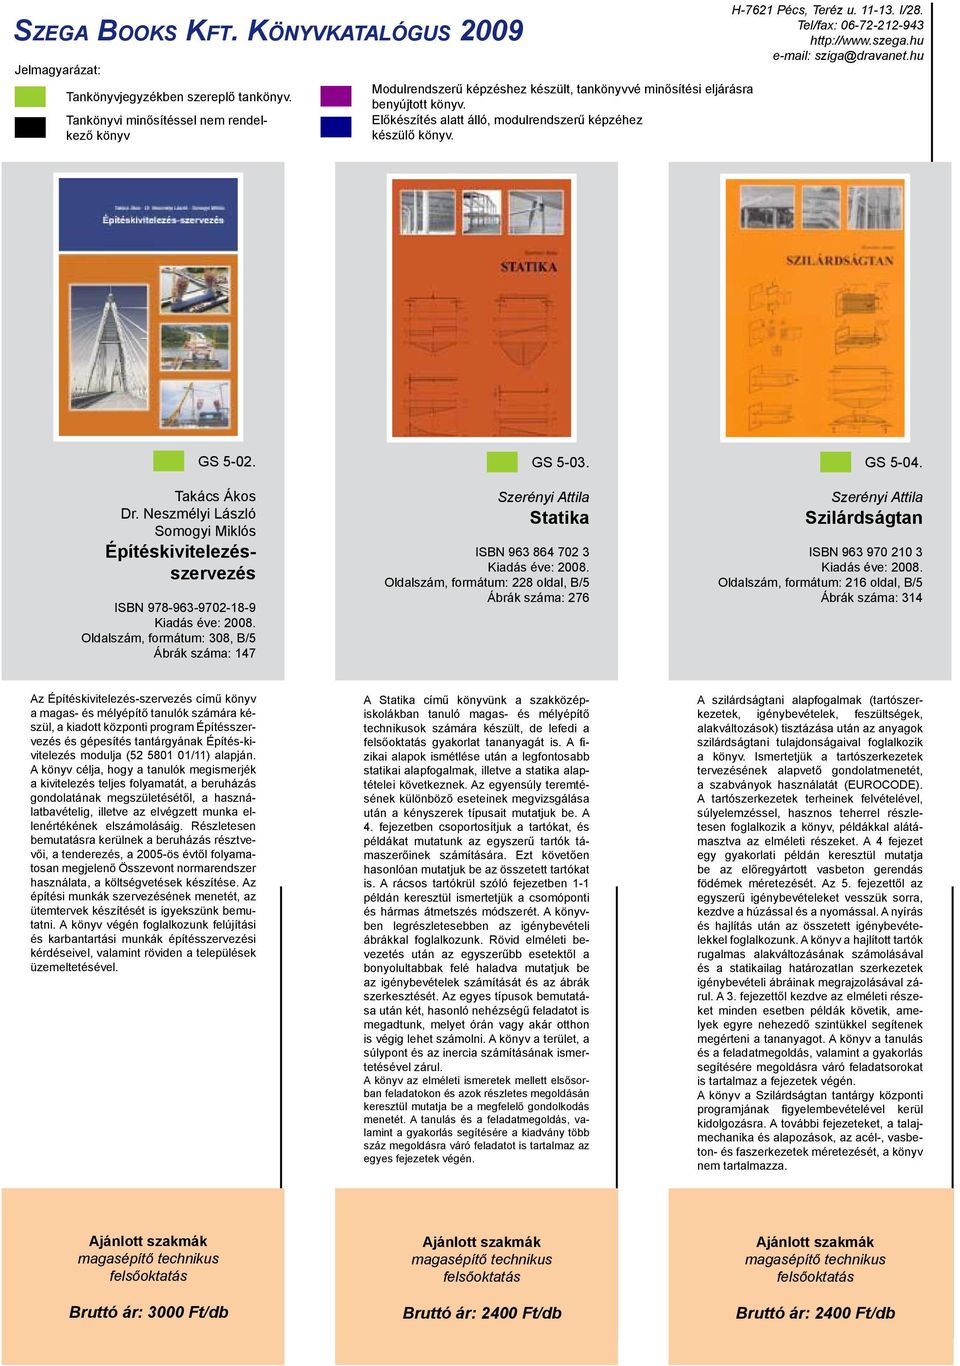 Szerényi Attila Statika ISBN 963 864 702 3 Oldalszám, formátum: 228 oldal, B/5 Ábrák száma: 276 GS 5-04.